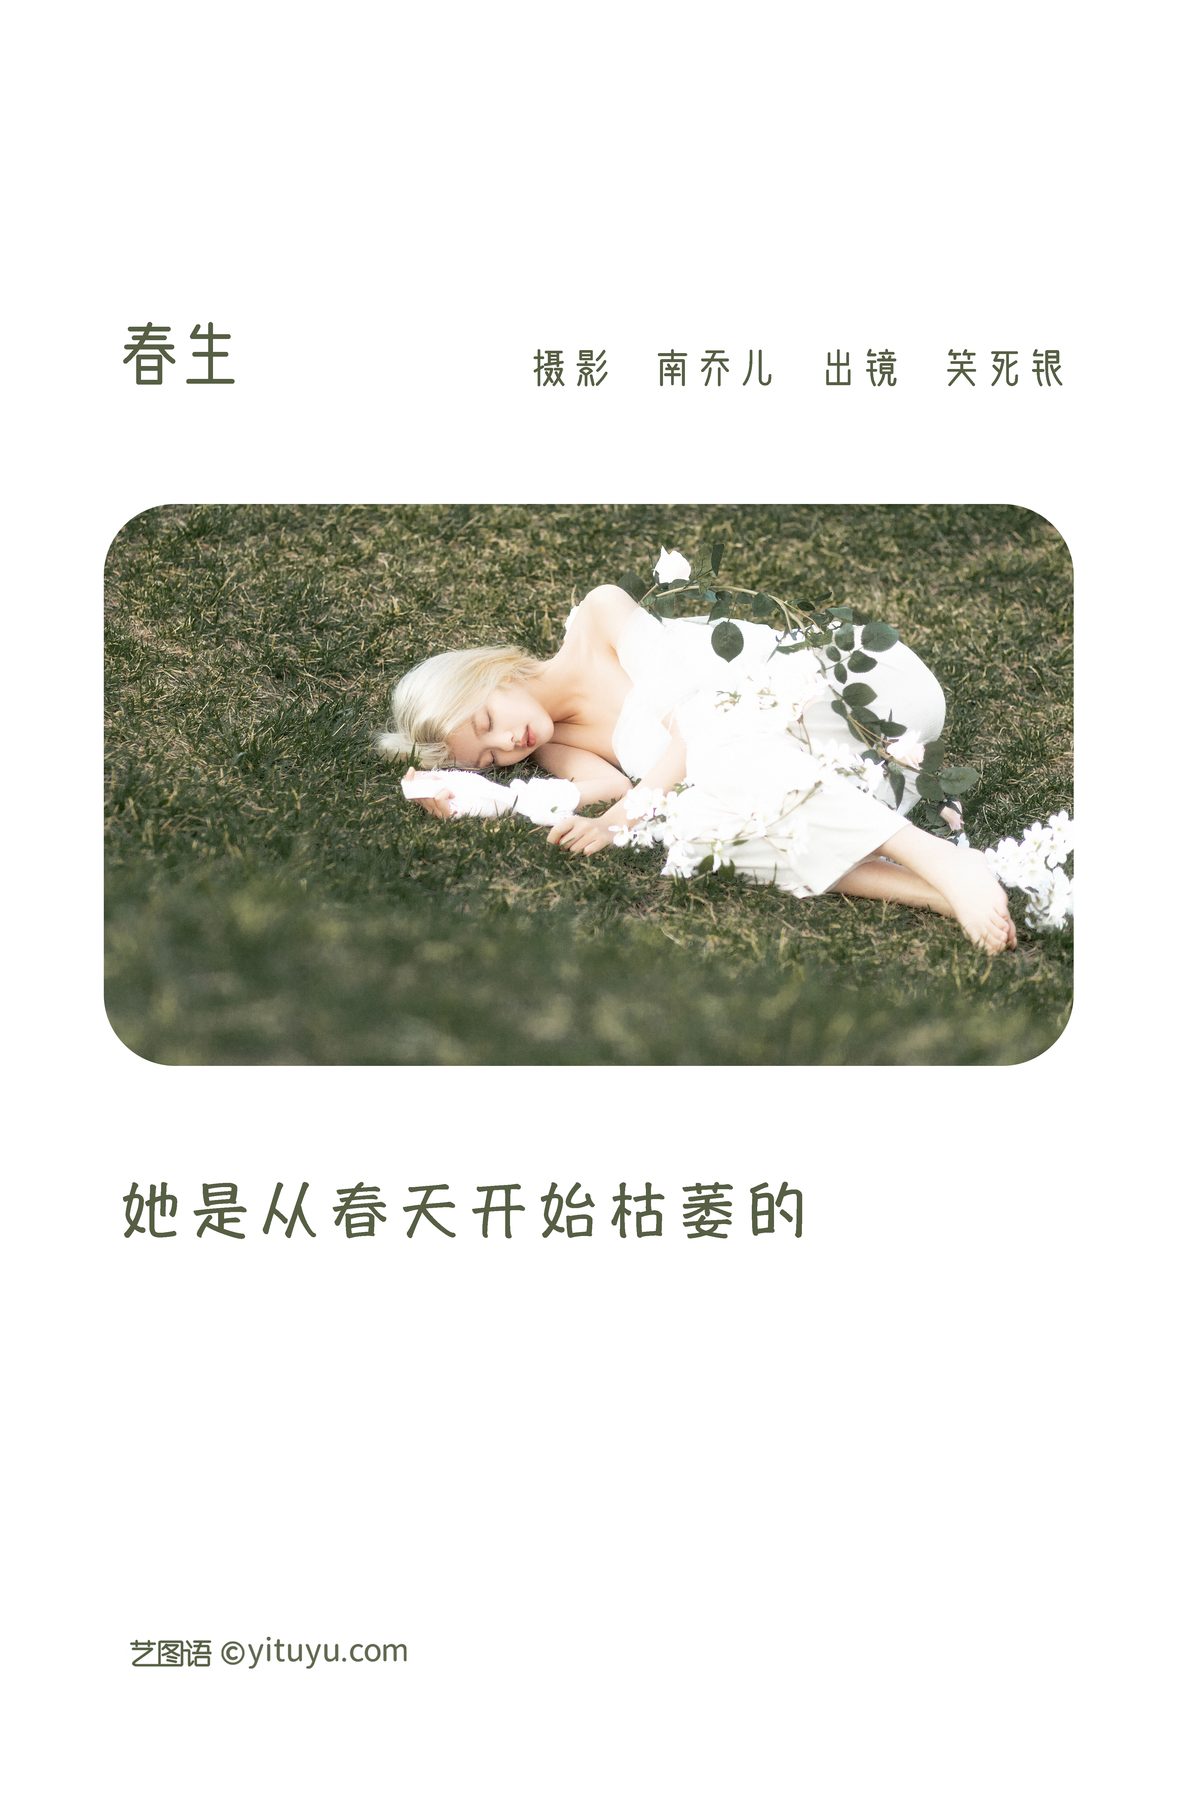 YiTuYu艺图语 Vol 3173 Xiao Si Yin 0001 3884936162.jpg